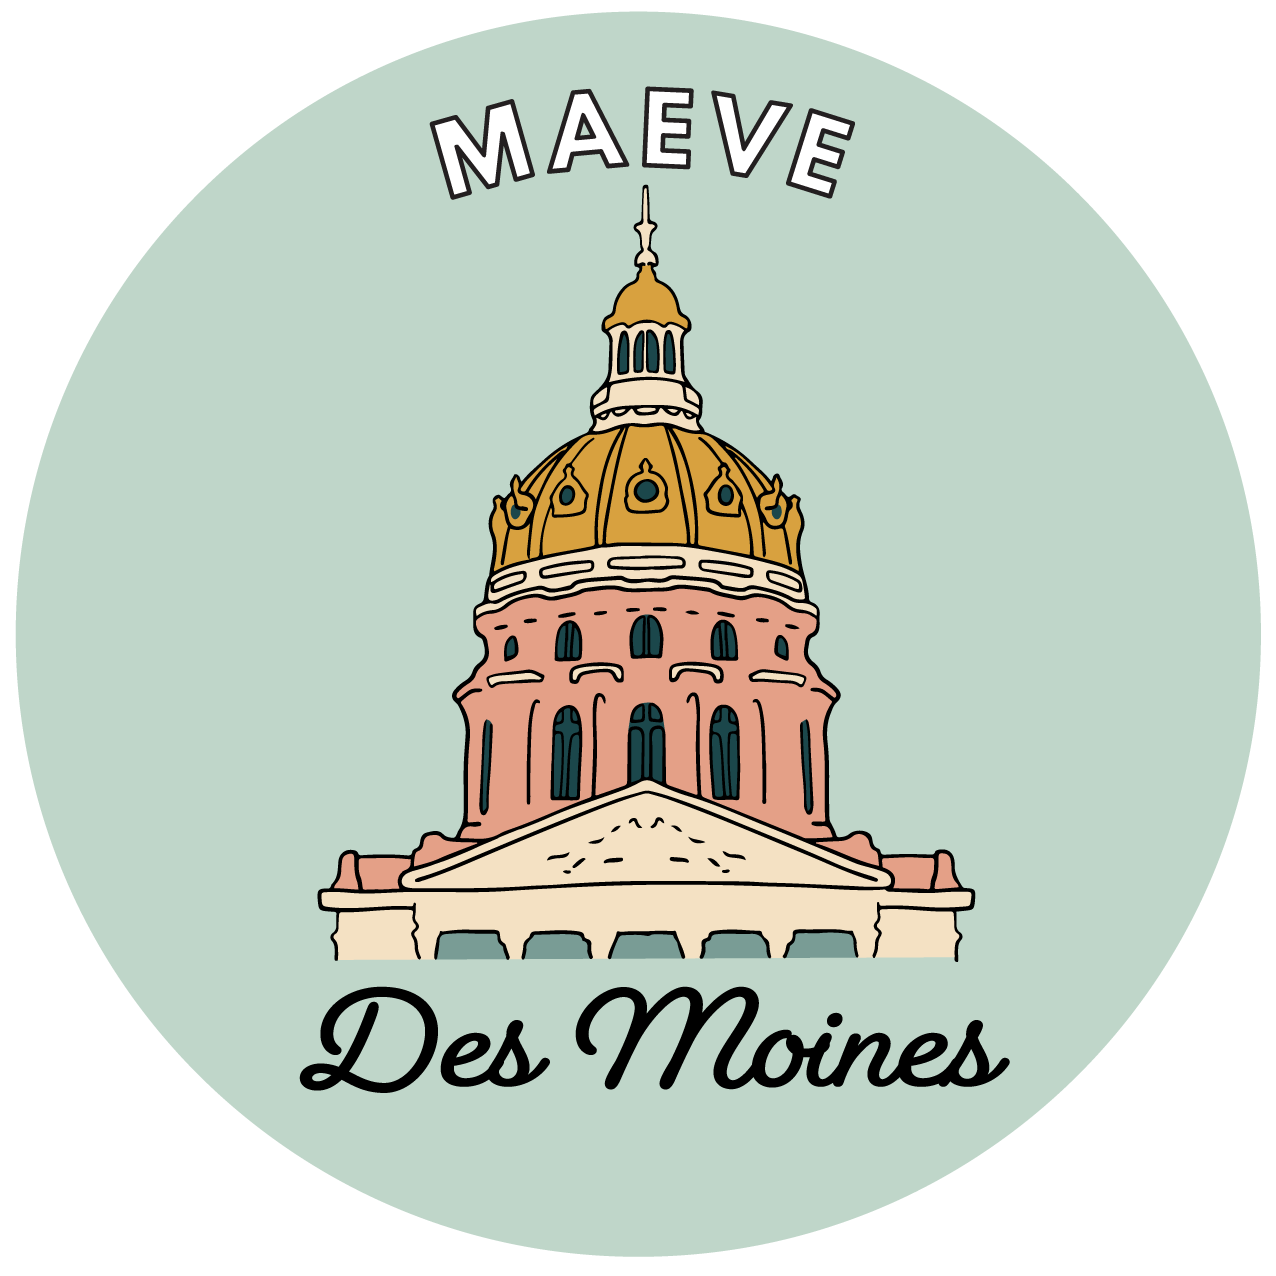 MAEVE Des Moines